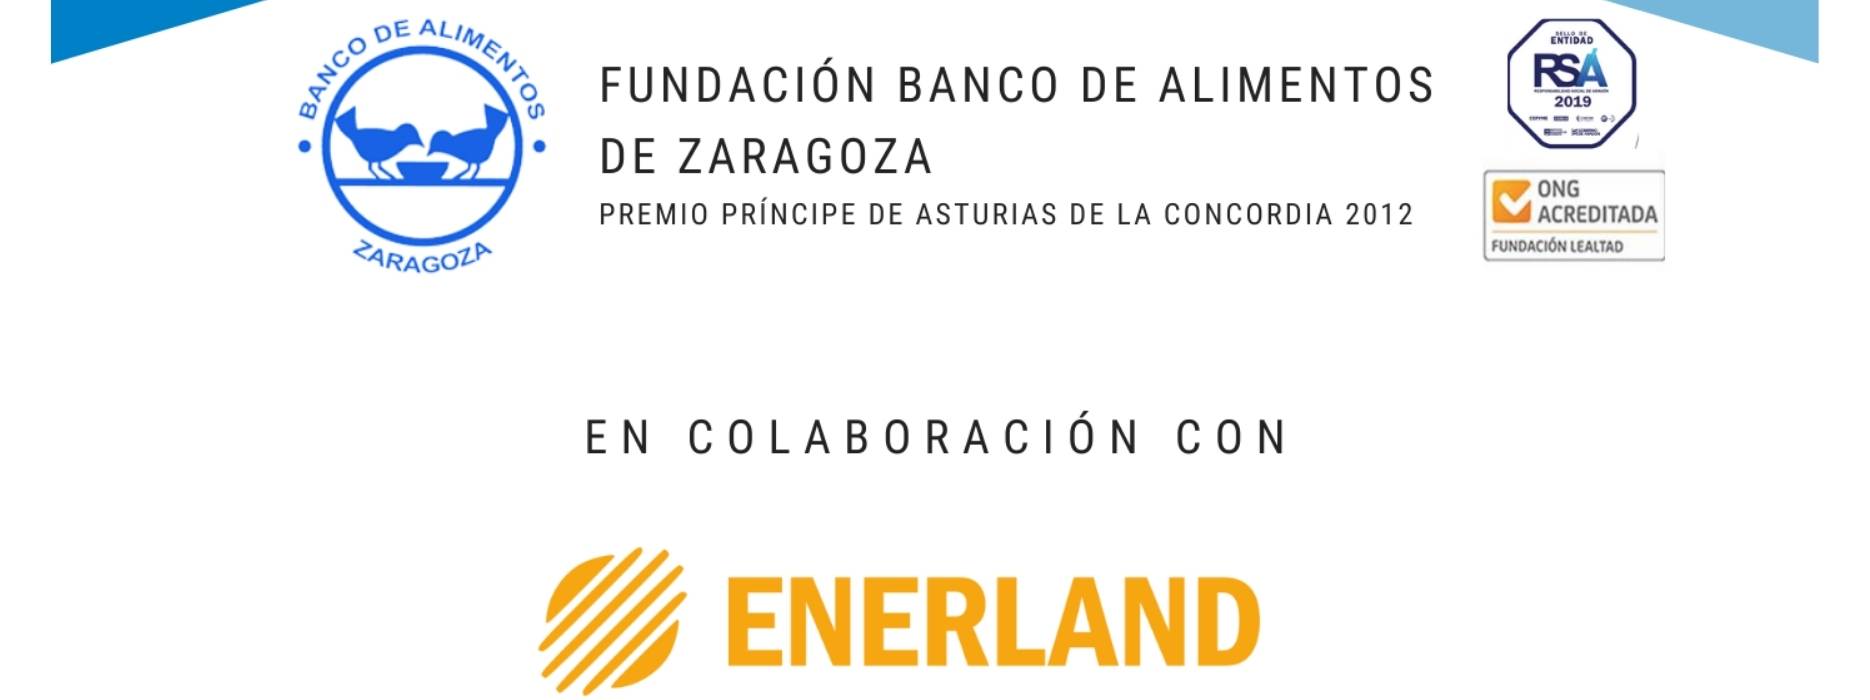 Enerland colabora con el Banco de Alimentos de Zaragoza